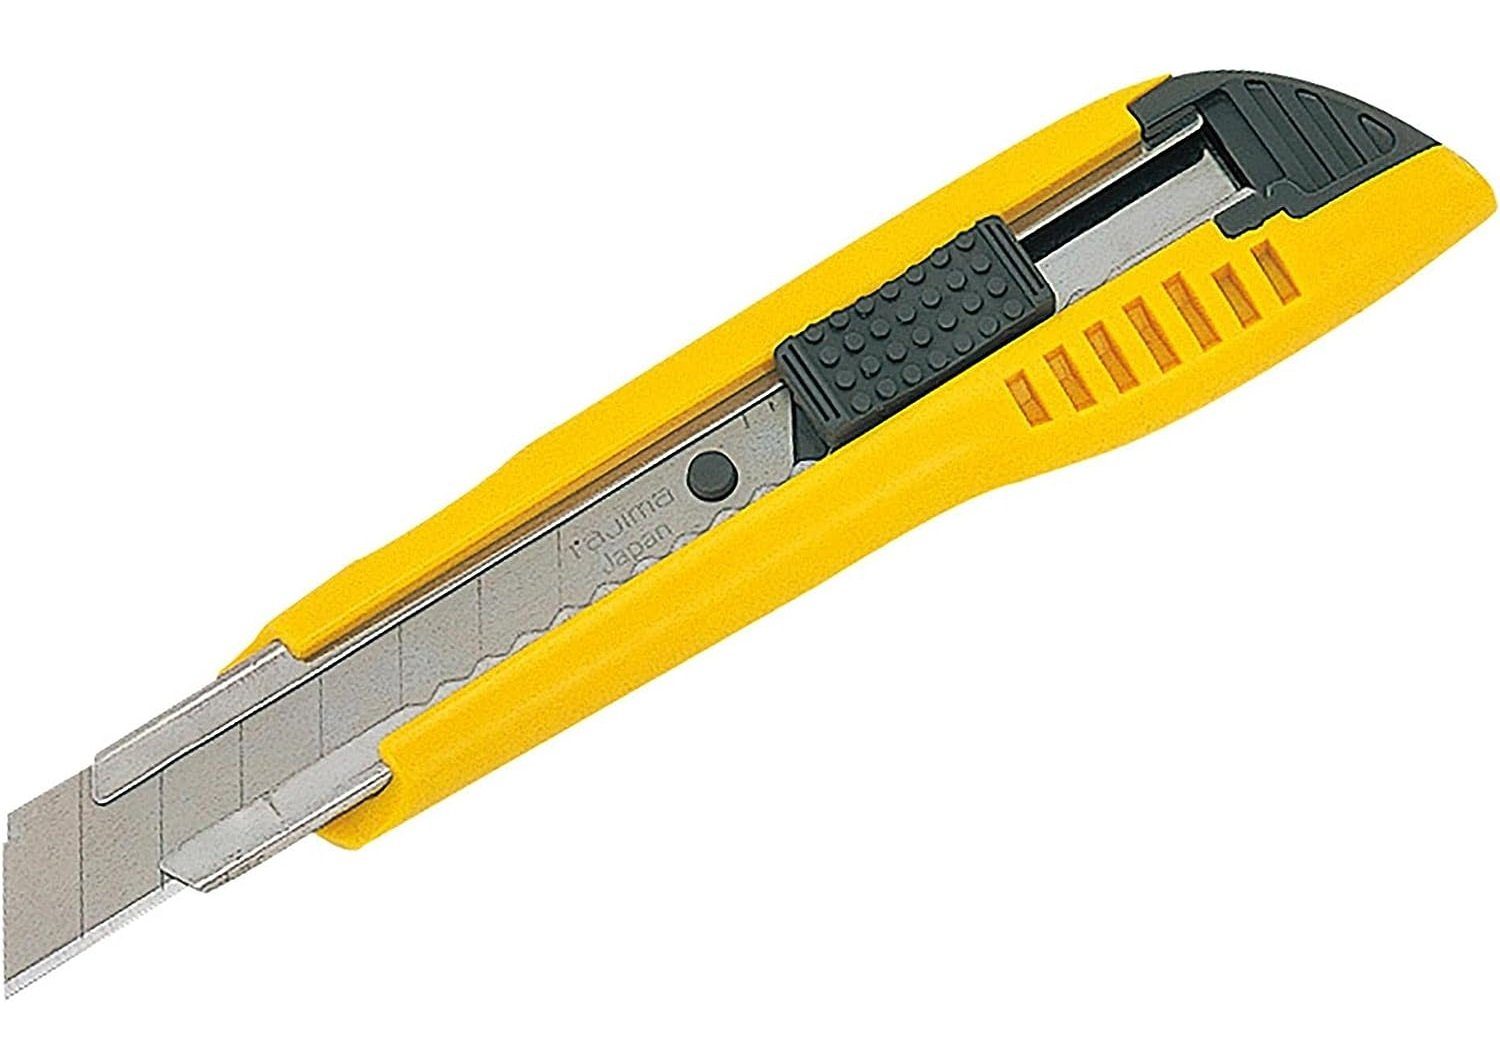 Tajima Teppichmesser Automatischer-Cutter 18 mm 3 Klingen ergonomischer Griff gelb